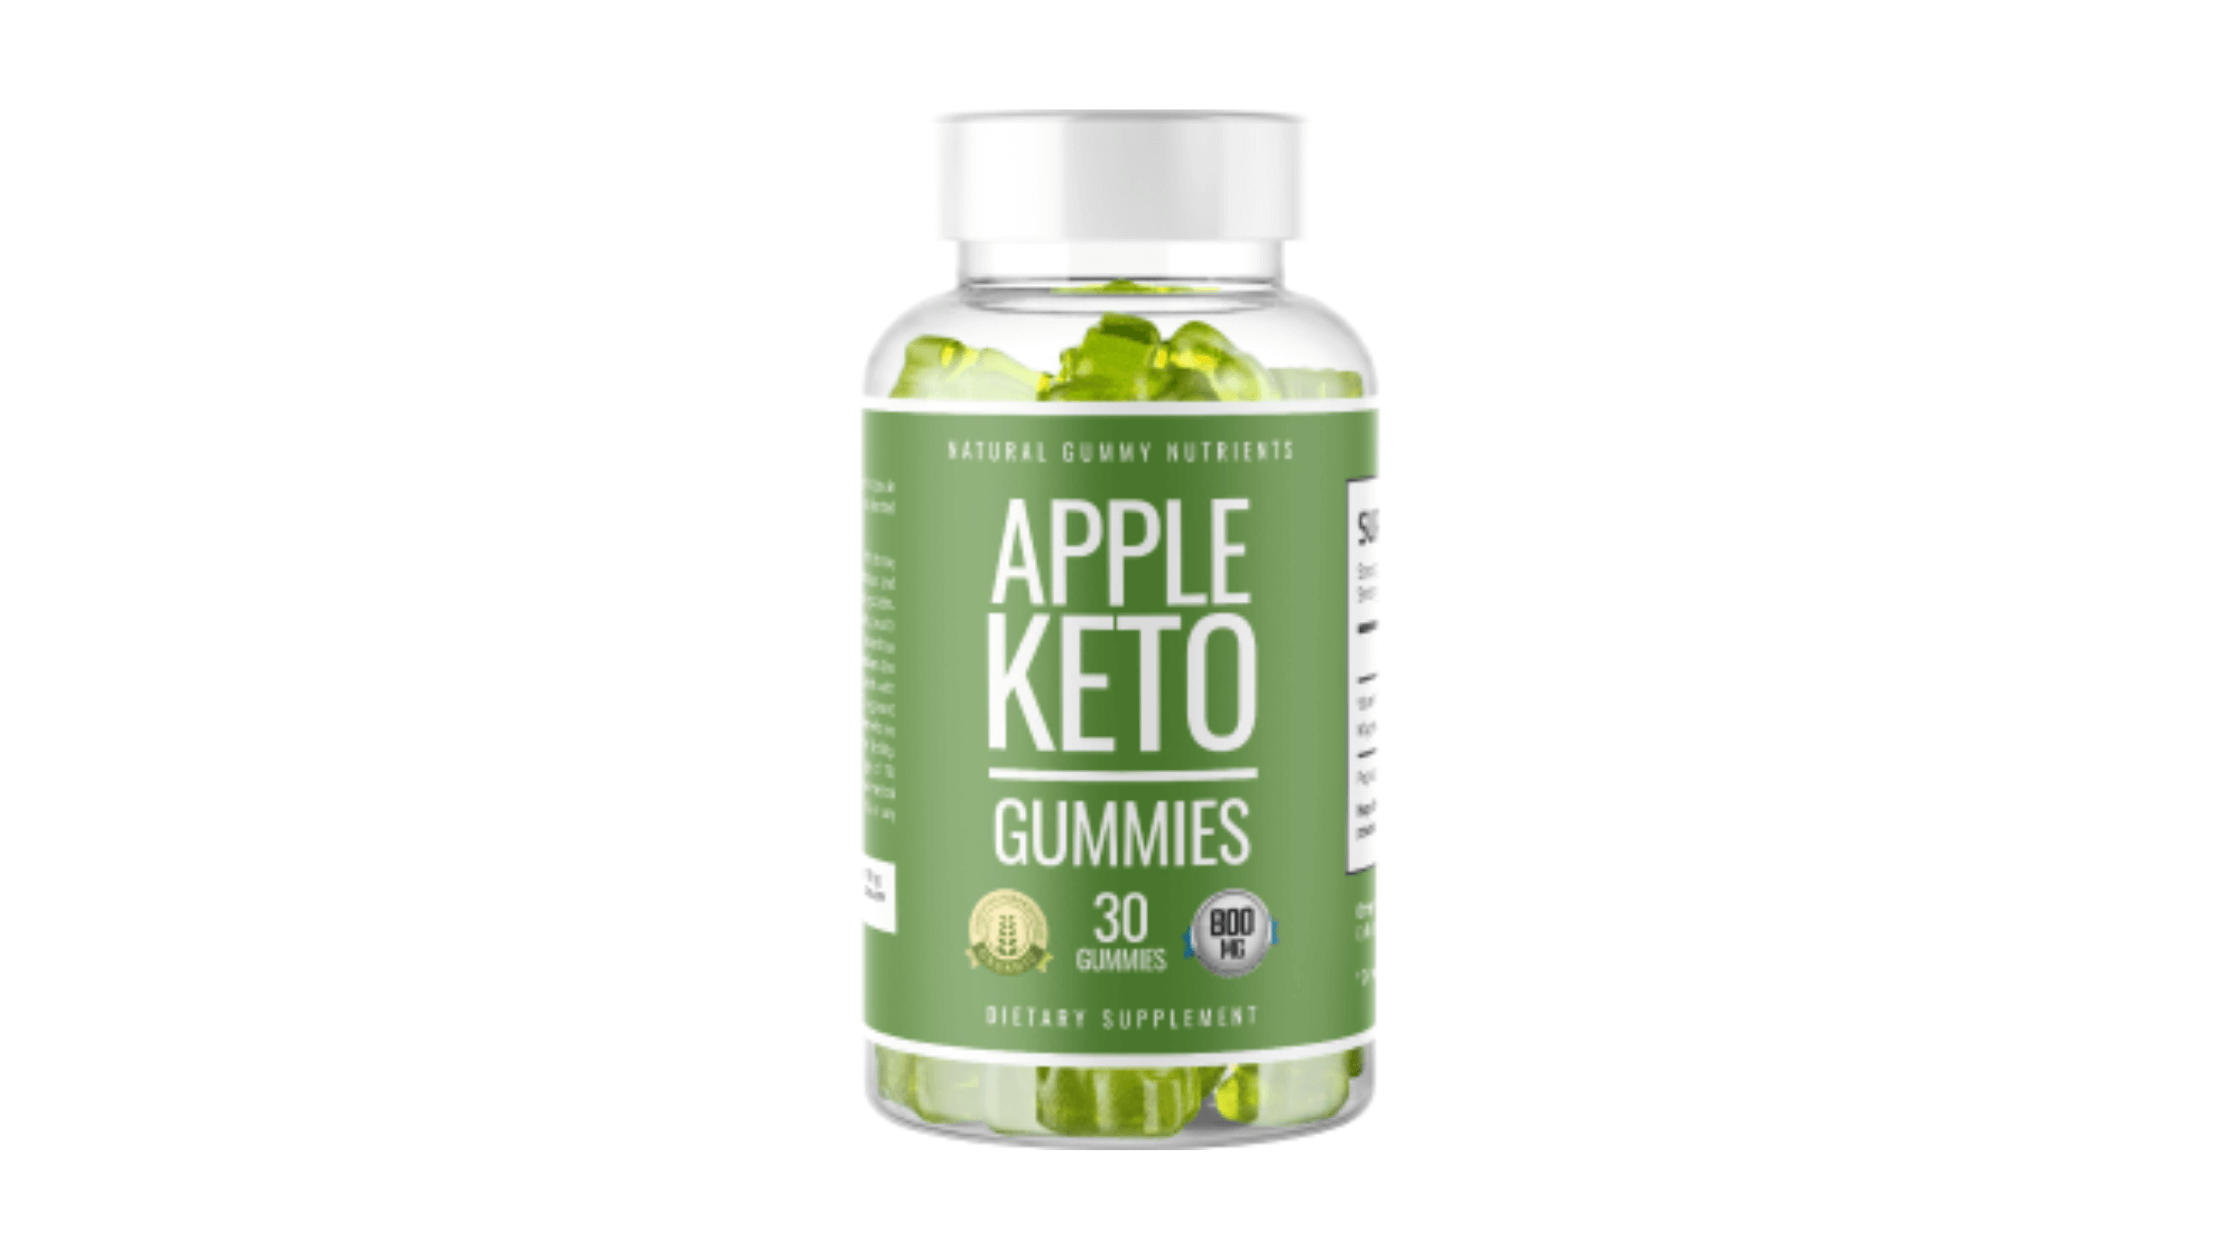 Apple Keto Gummies Australia Reviews